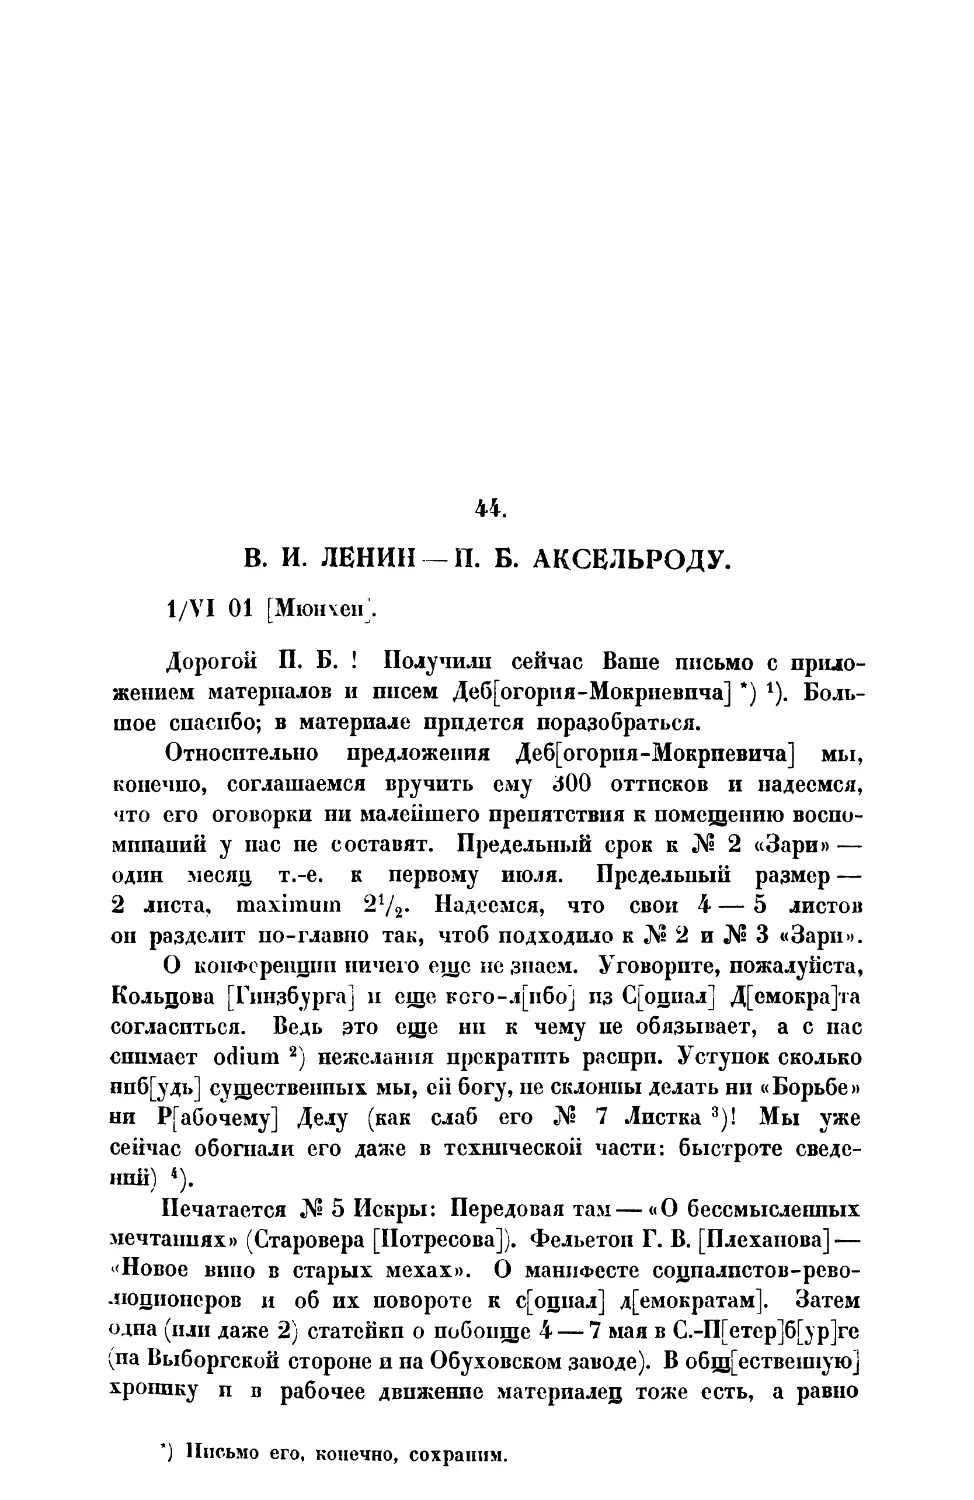 44. В. И. Ленин. — Письмо П. Б. Аксельроду от 1 VI 1901 г.